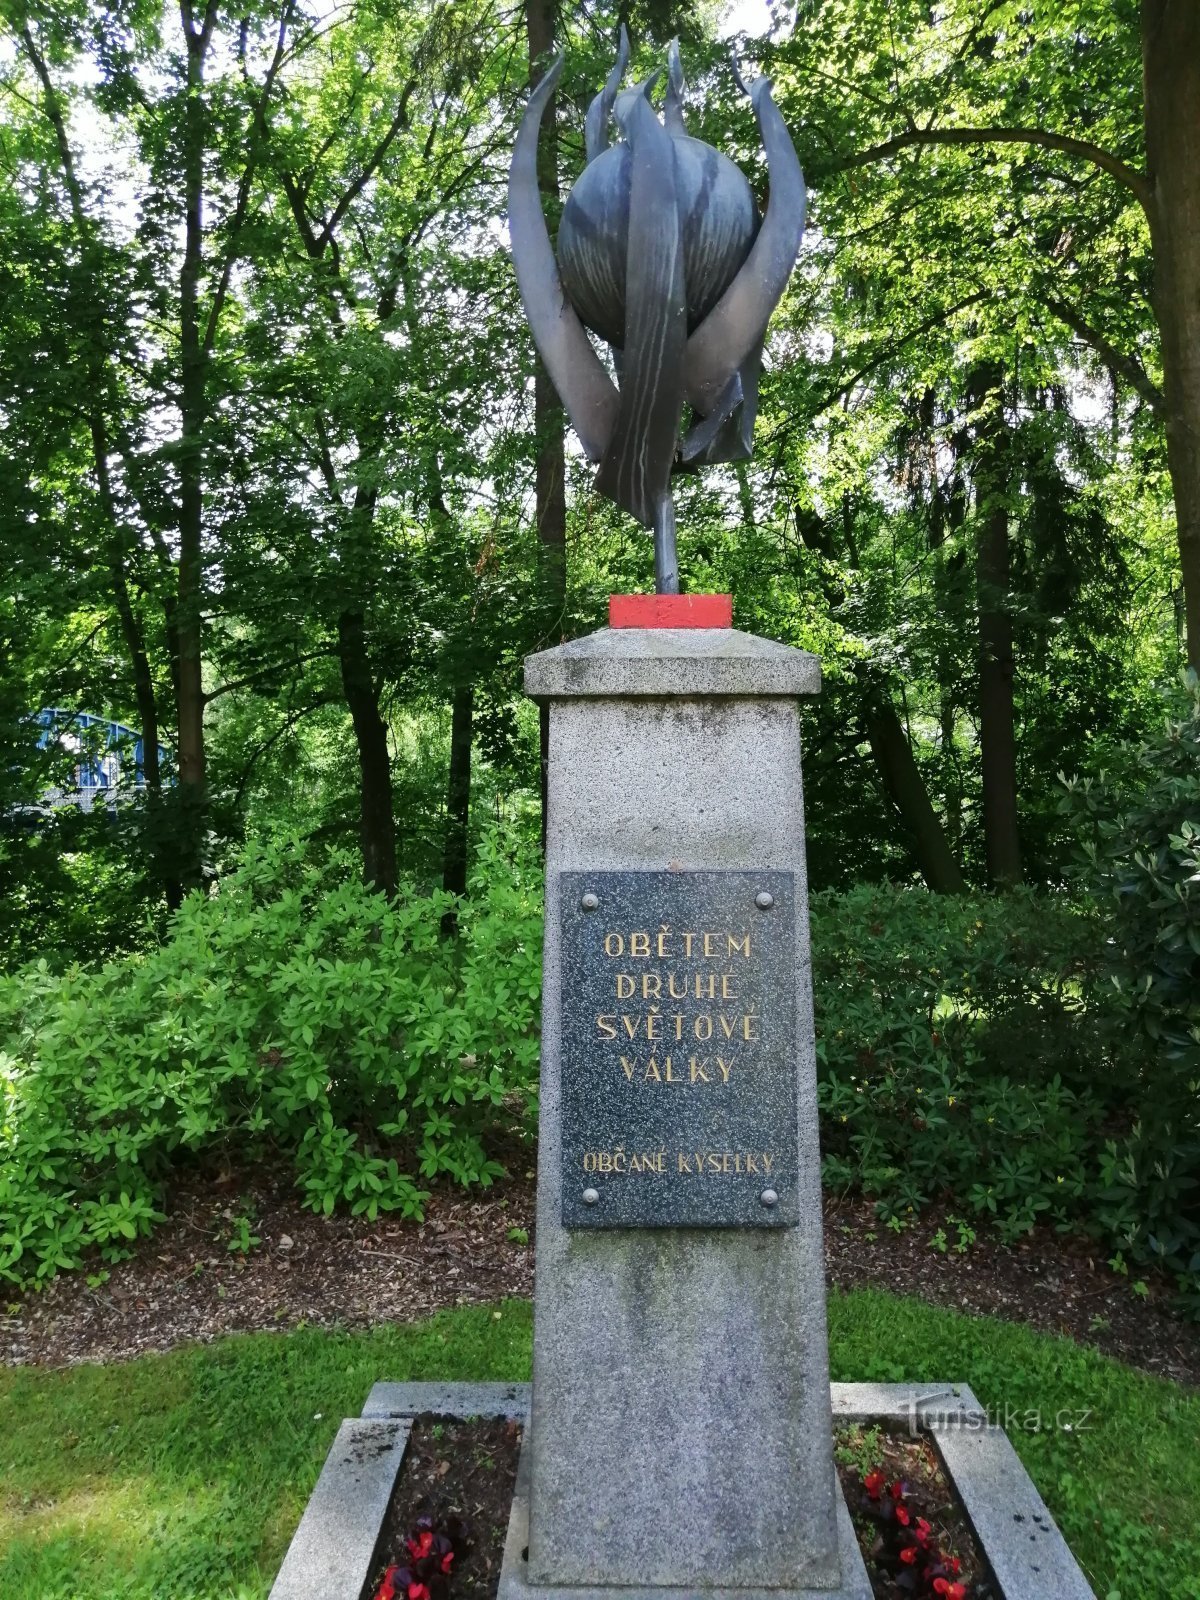 A második világháború áldozatainak emlékműve - Kyselka